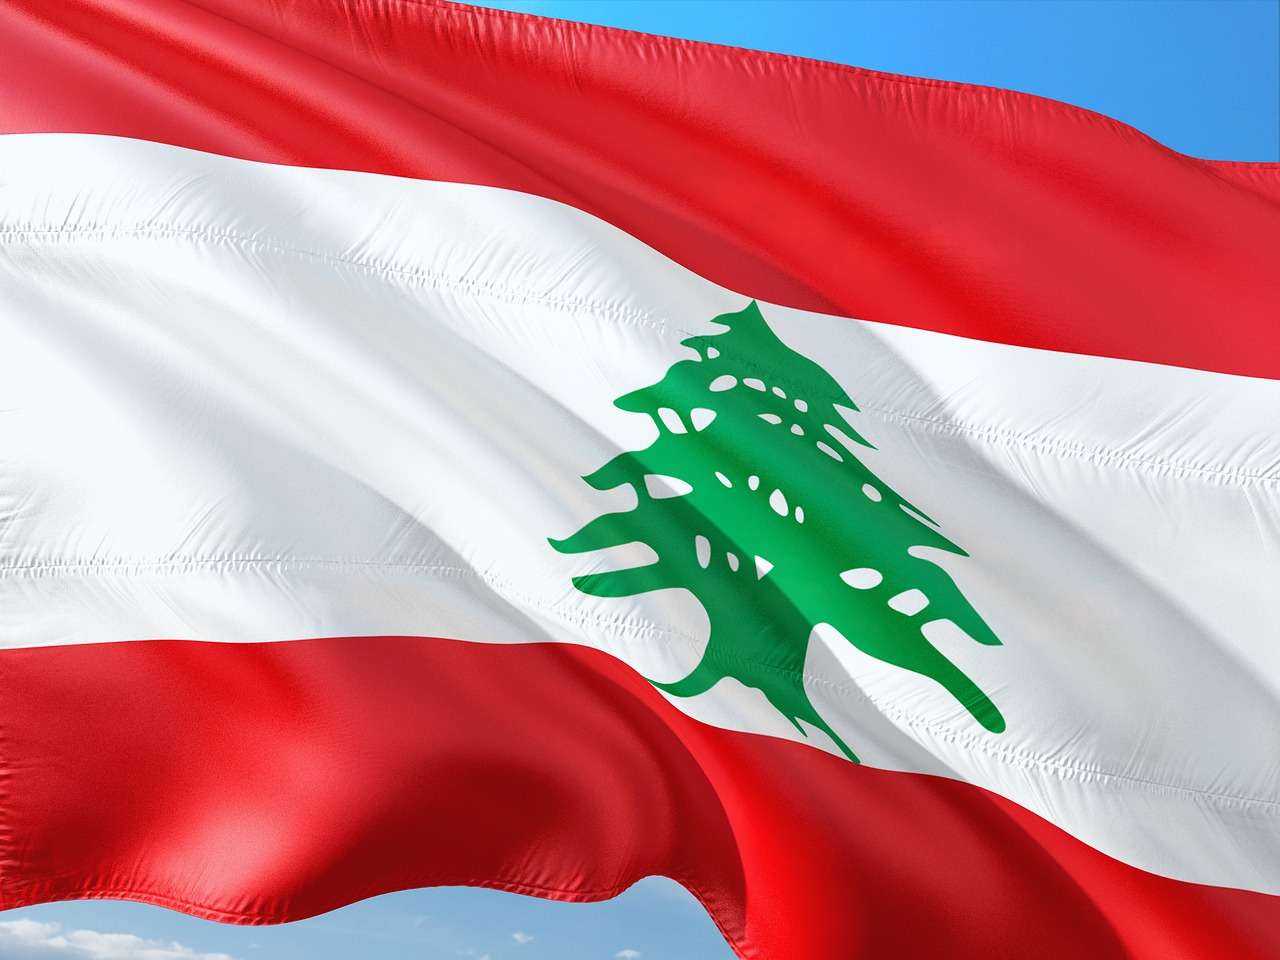 Λίβανος: Ο στρατός οργανώνει τουριστικές υπερπτήσεις για να ενισχύσει τον προϋπολογισμό του